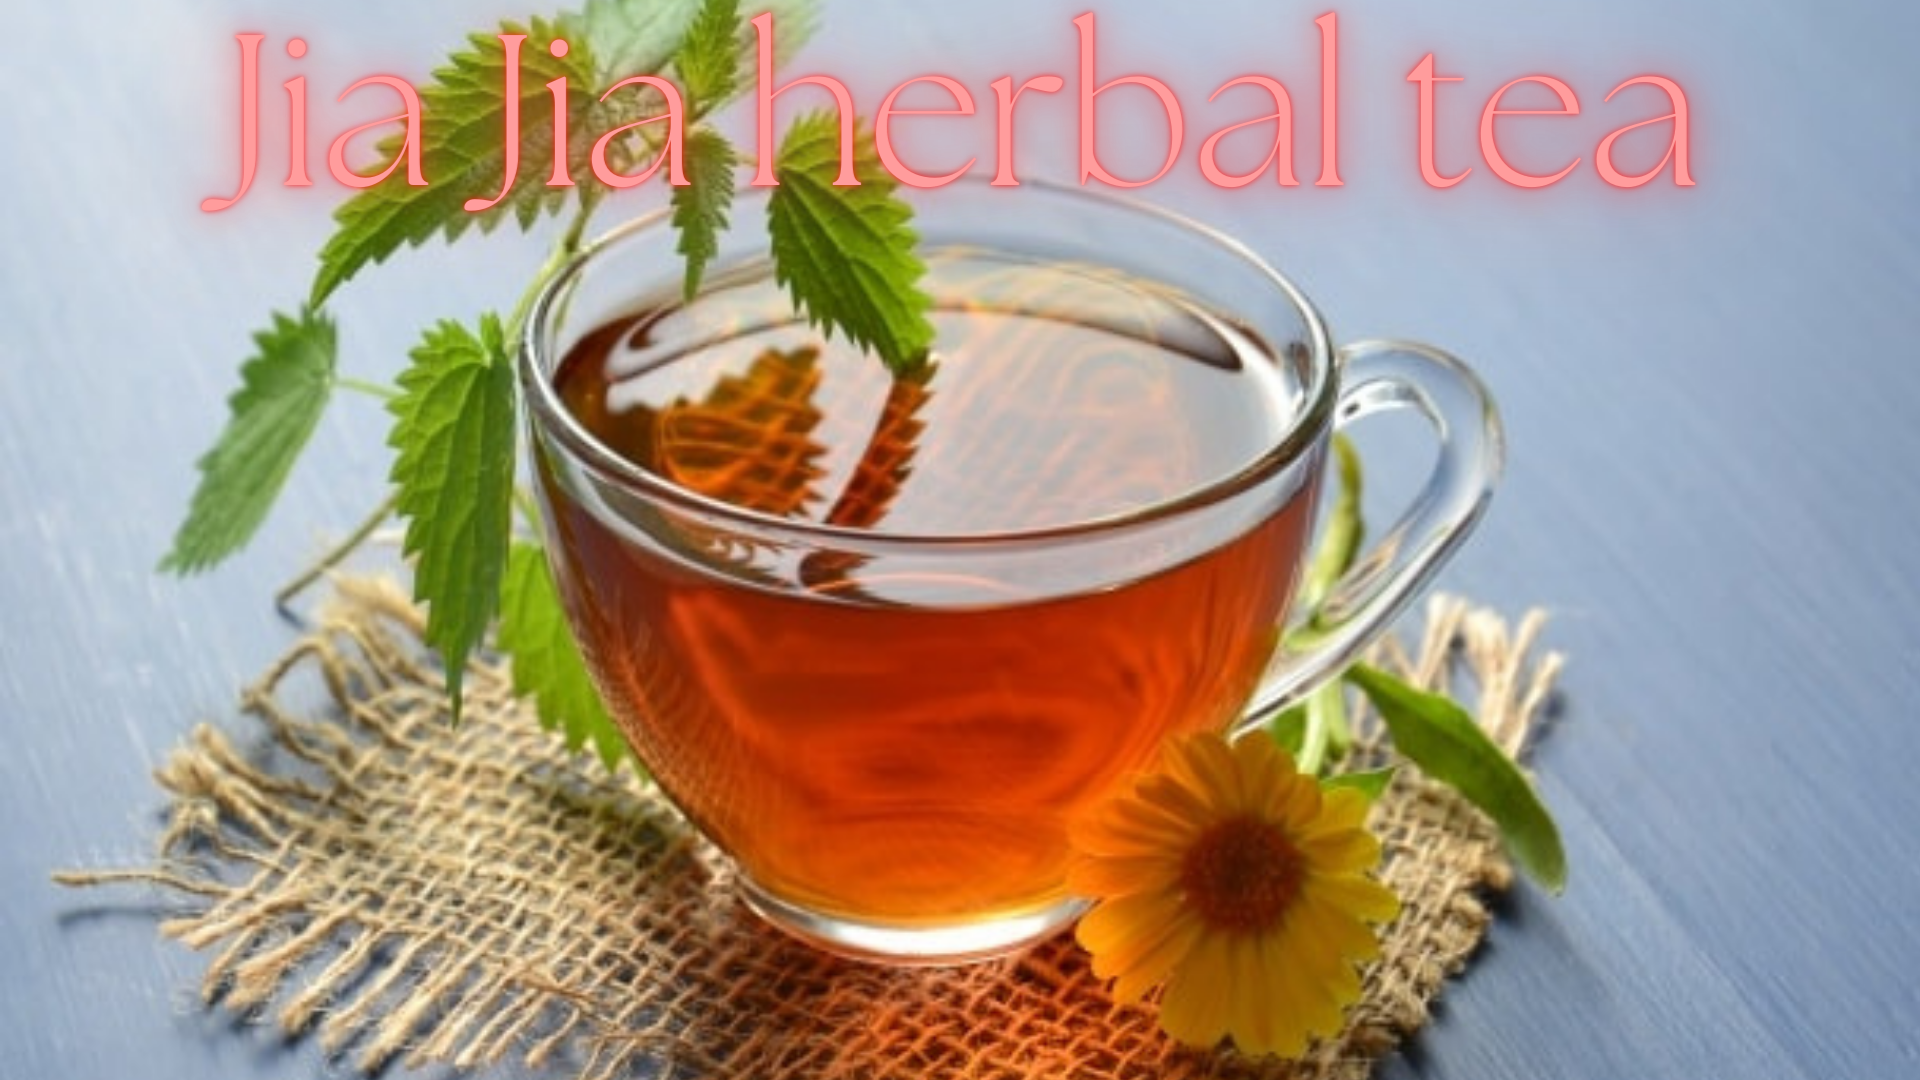 jia jia herbal tea